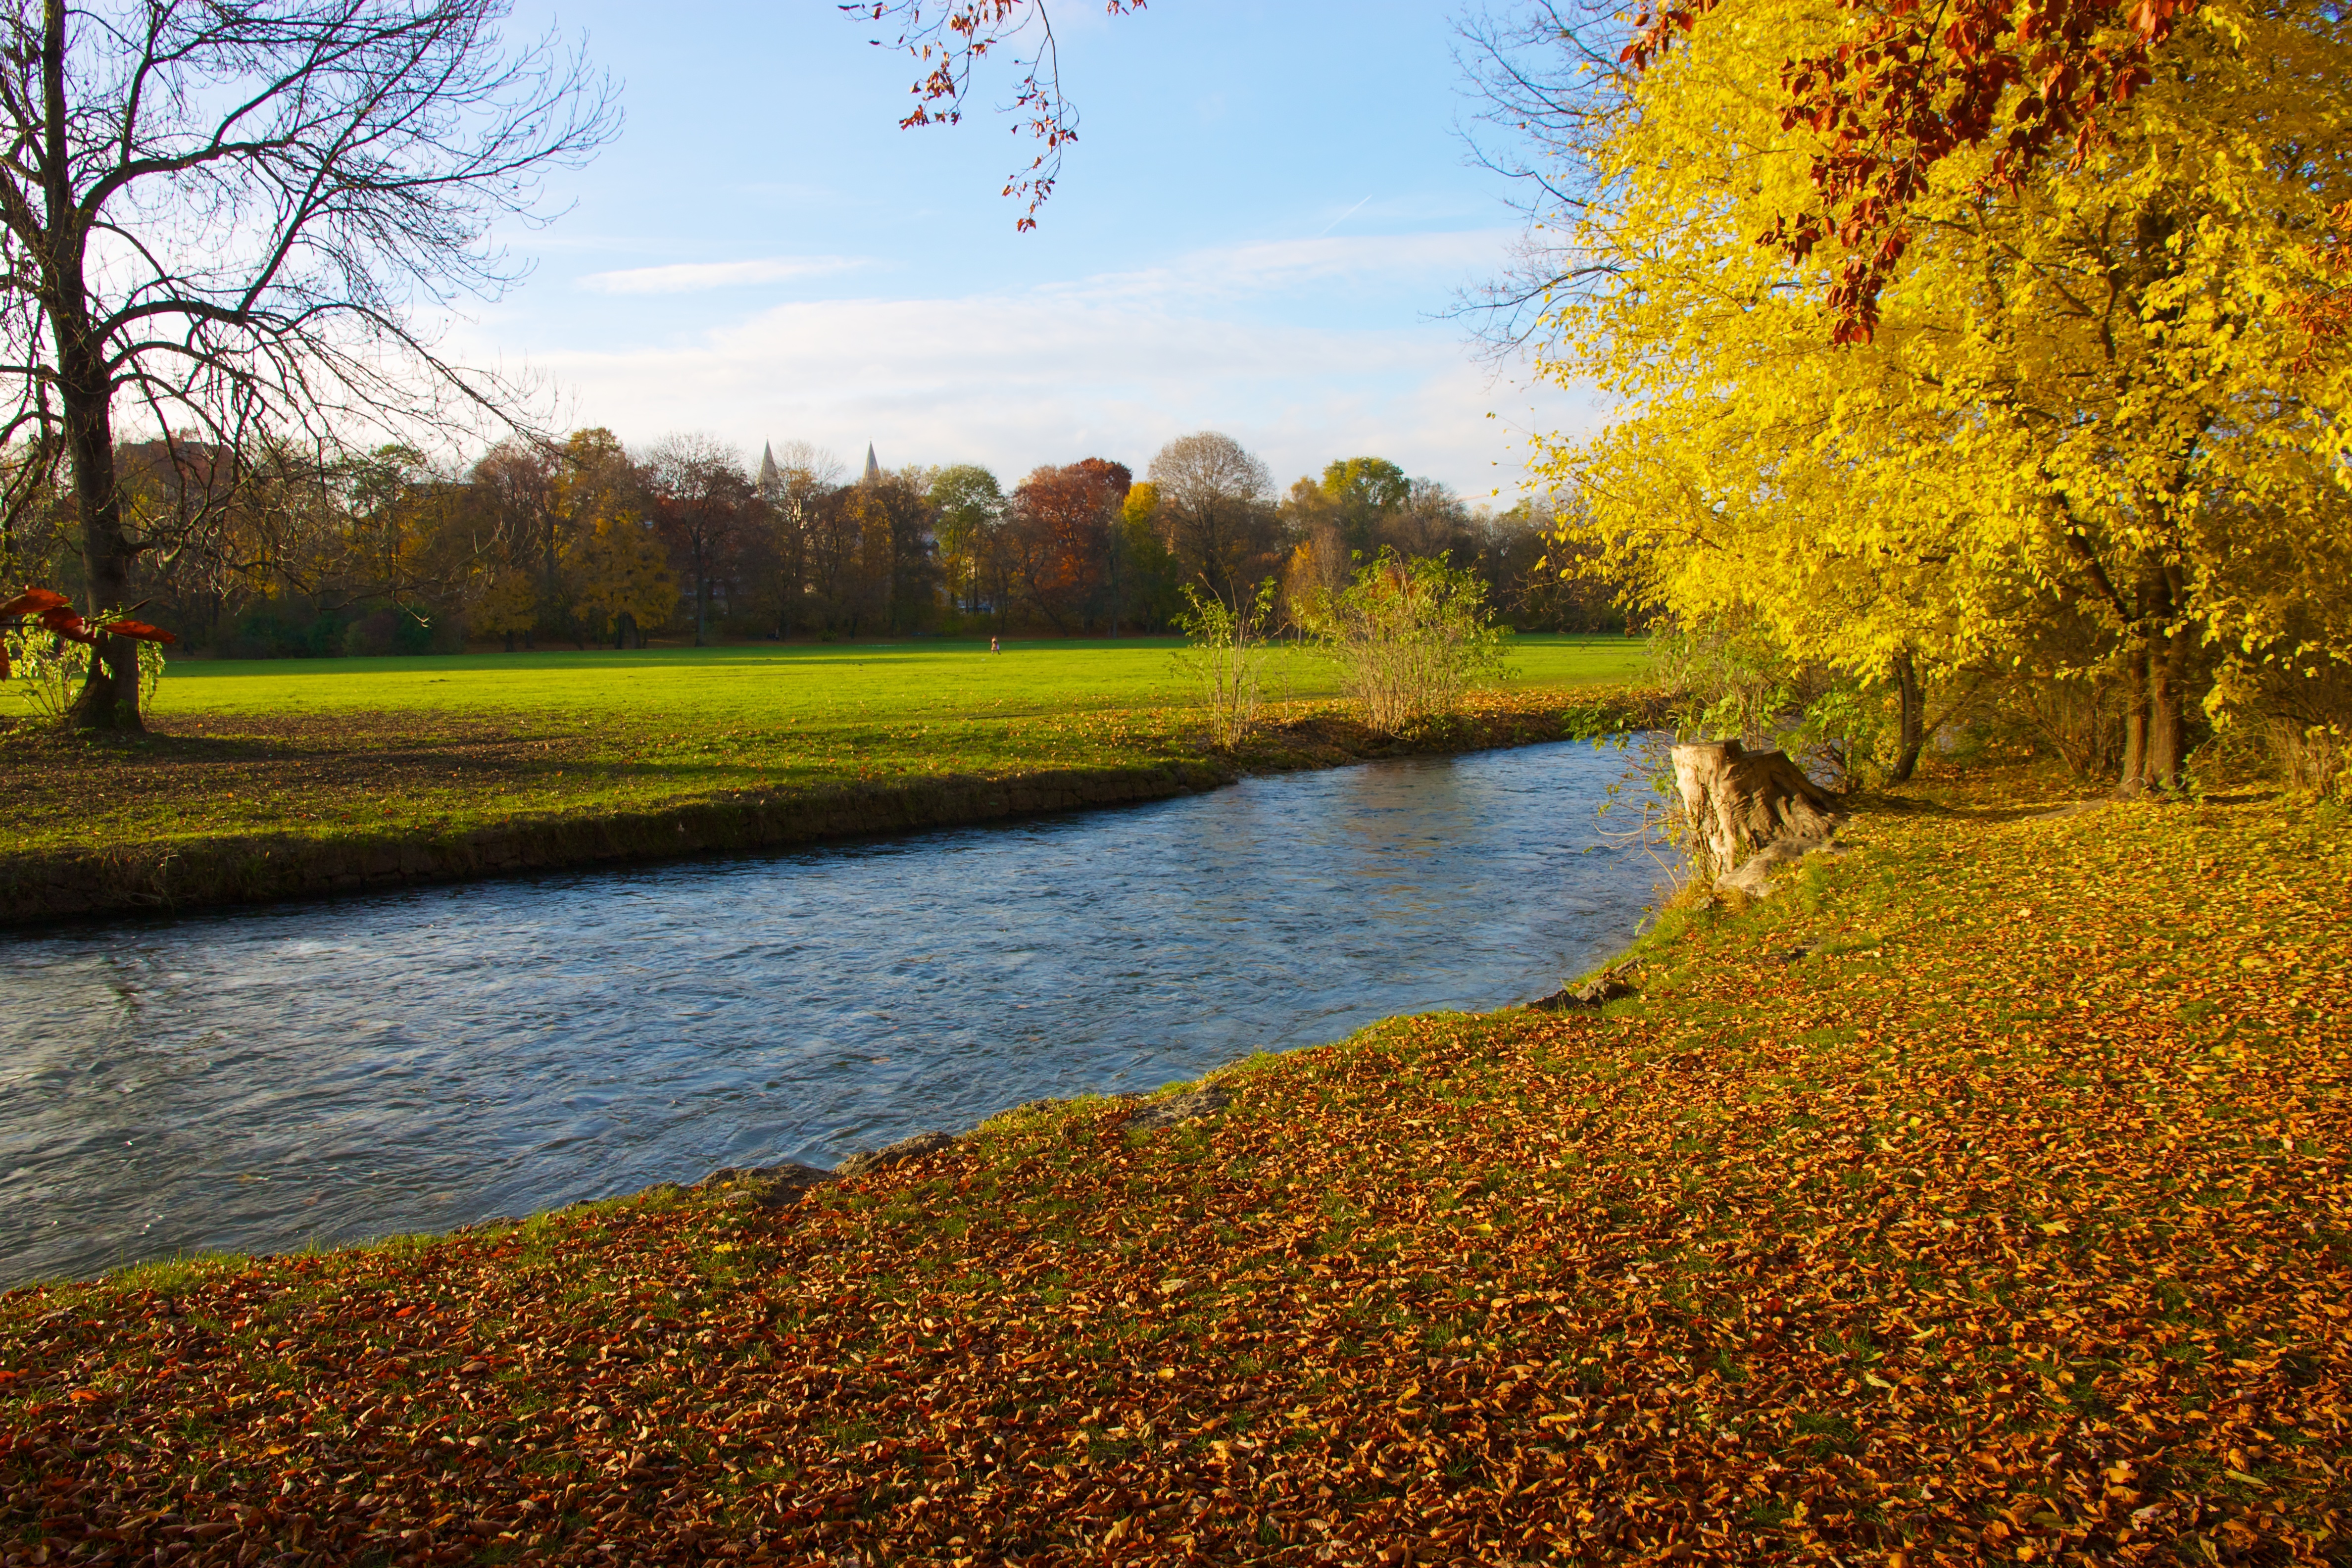 File:Fall foliage, English Garden, Munich.jpg - Wikimedia Commons